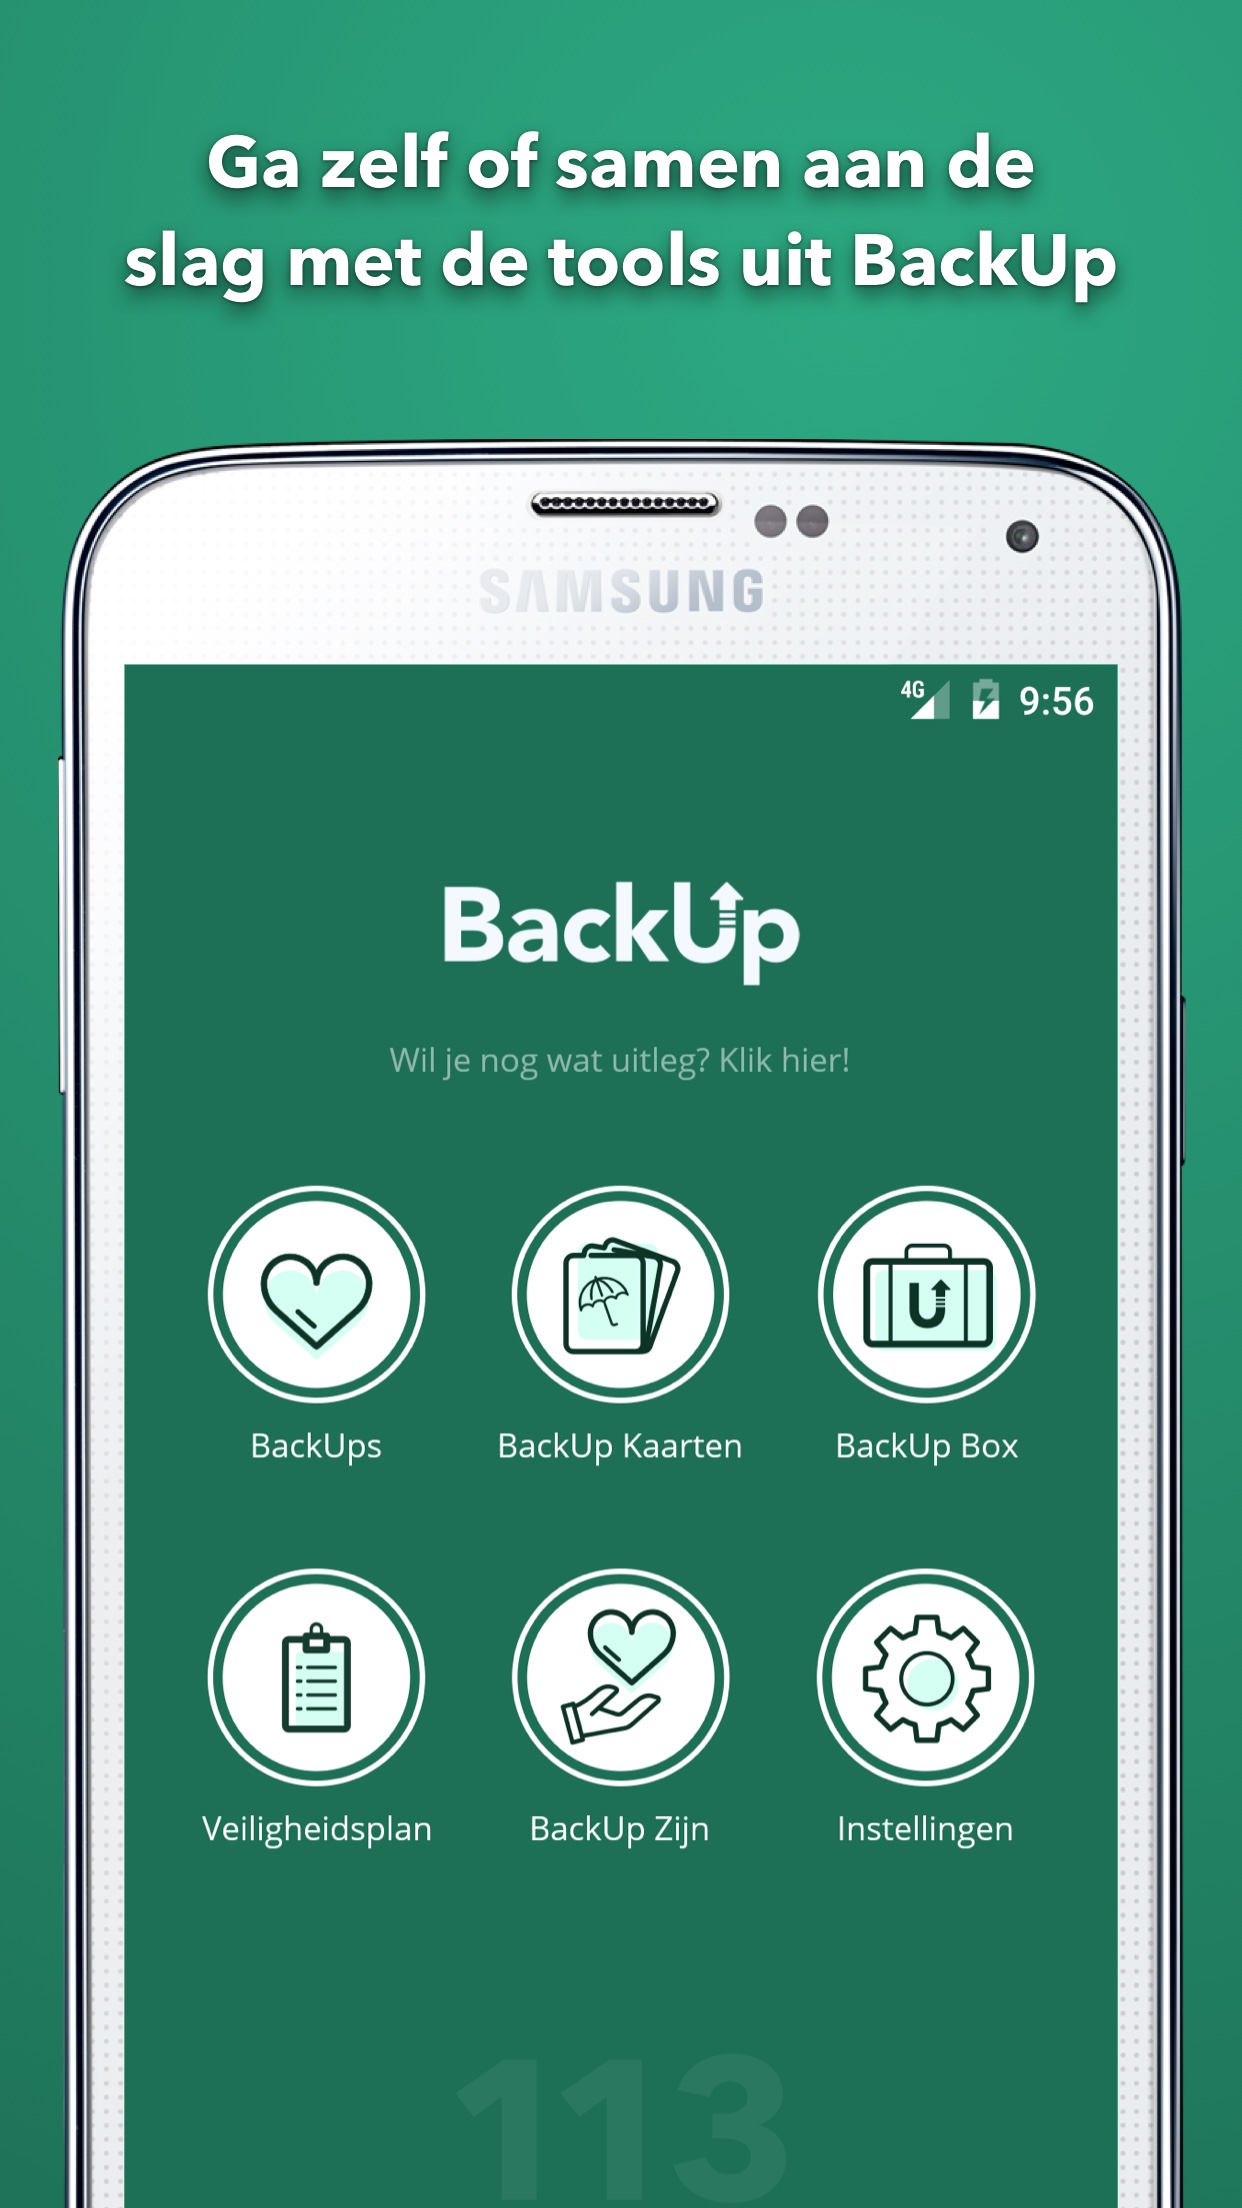 BackUp app zelfmoordpreventie